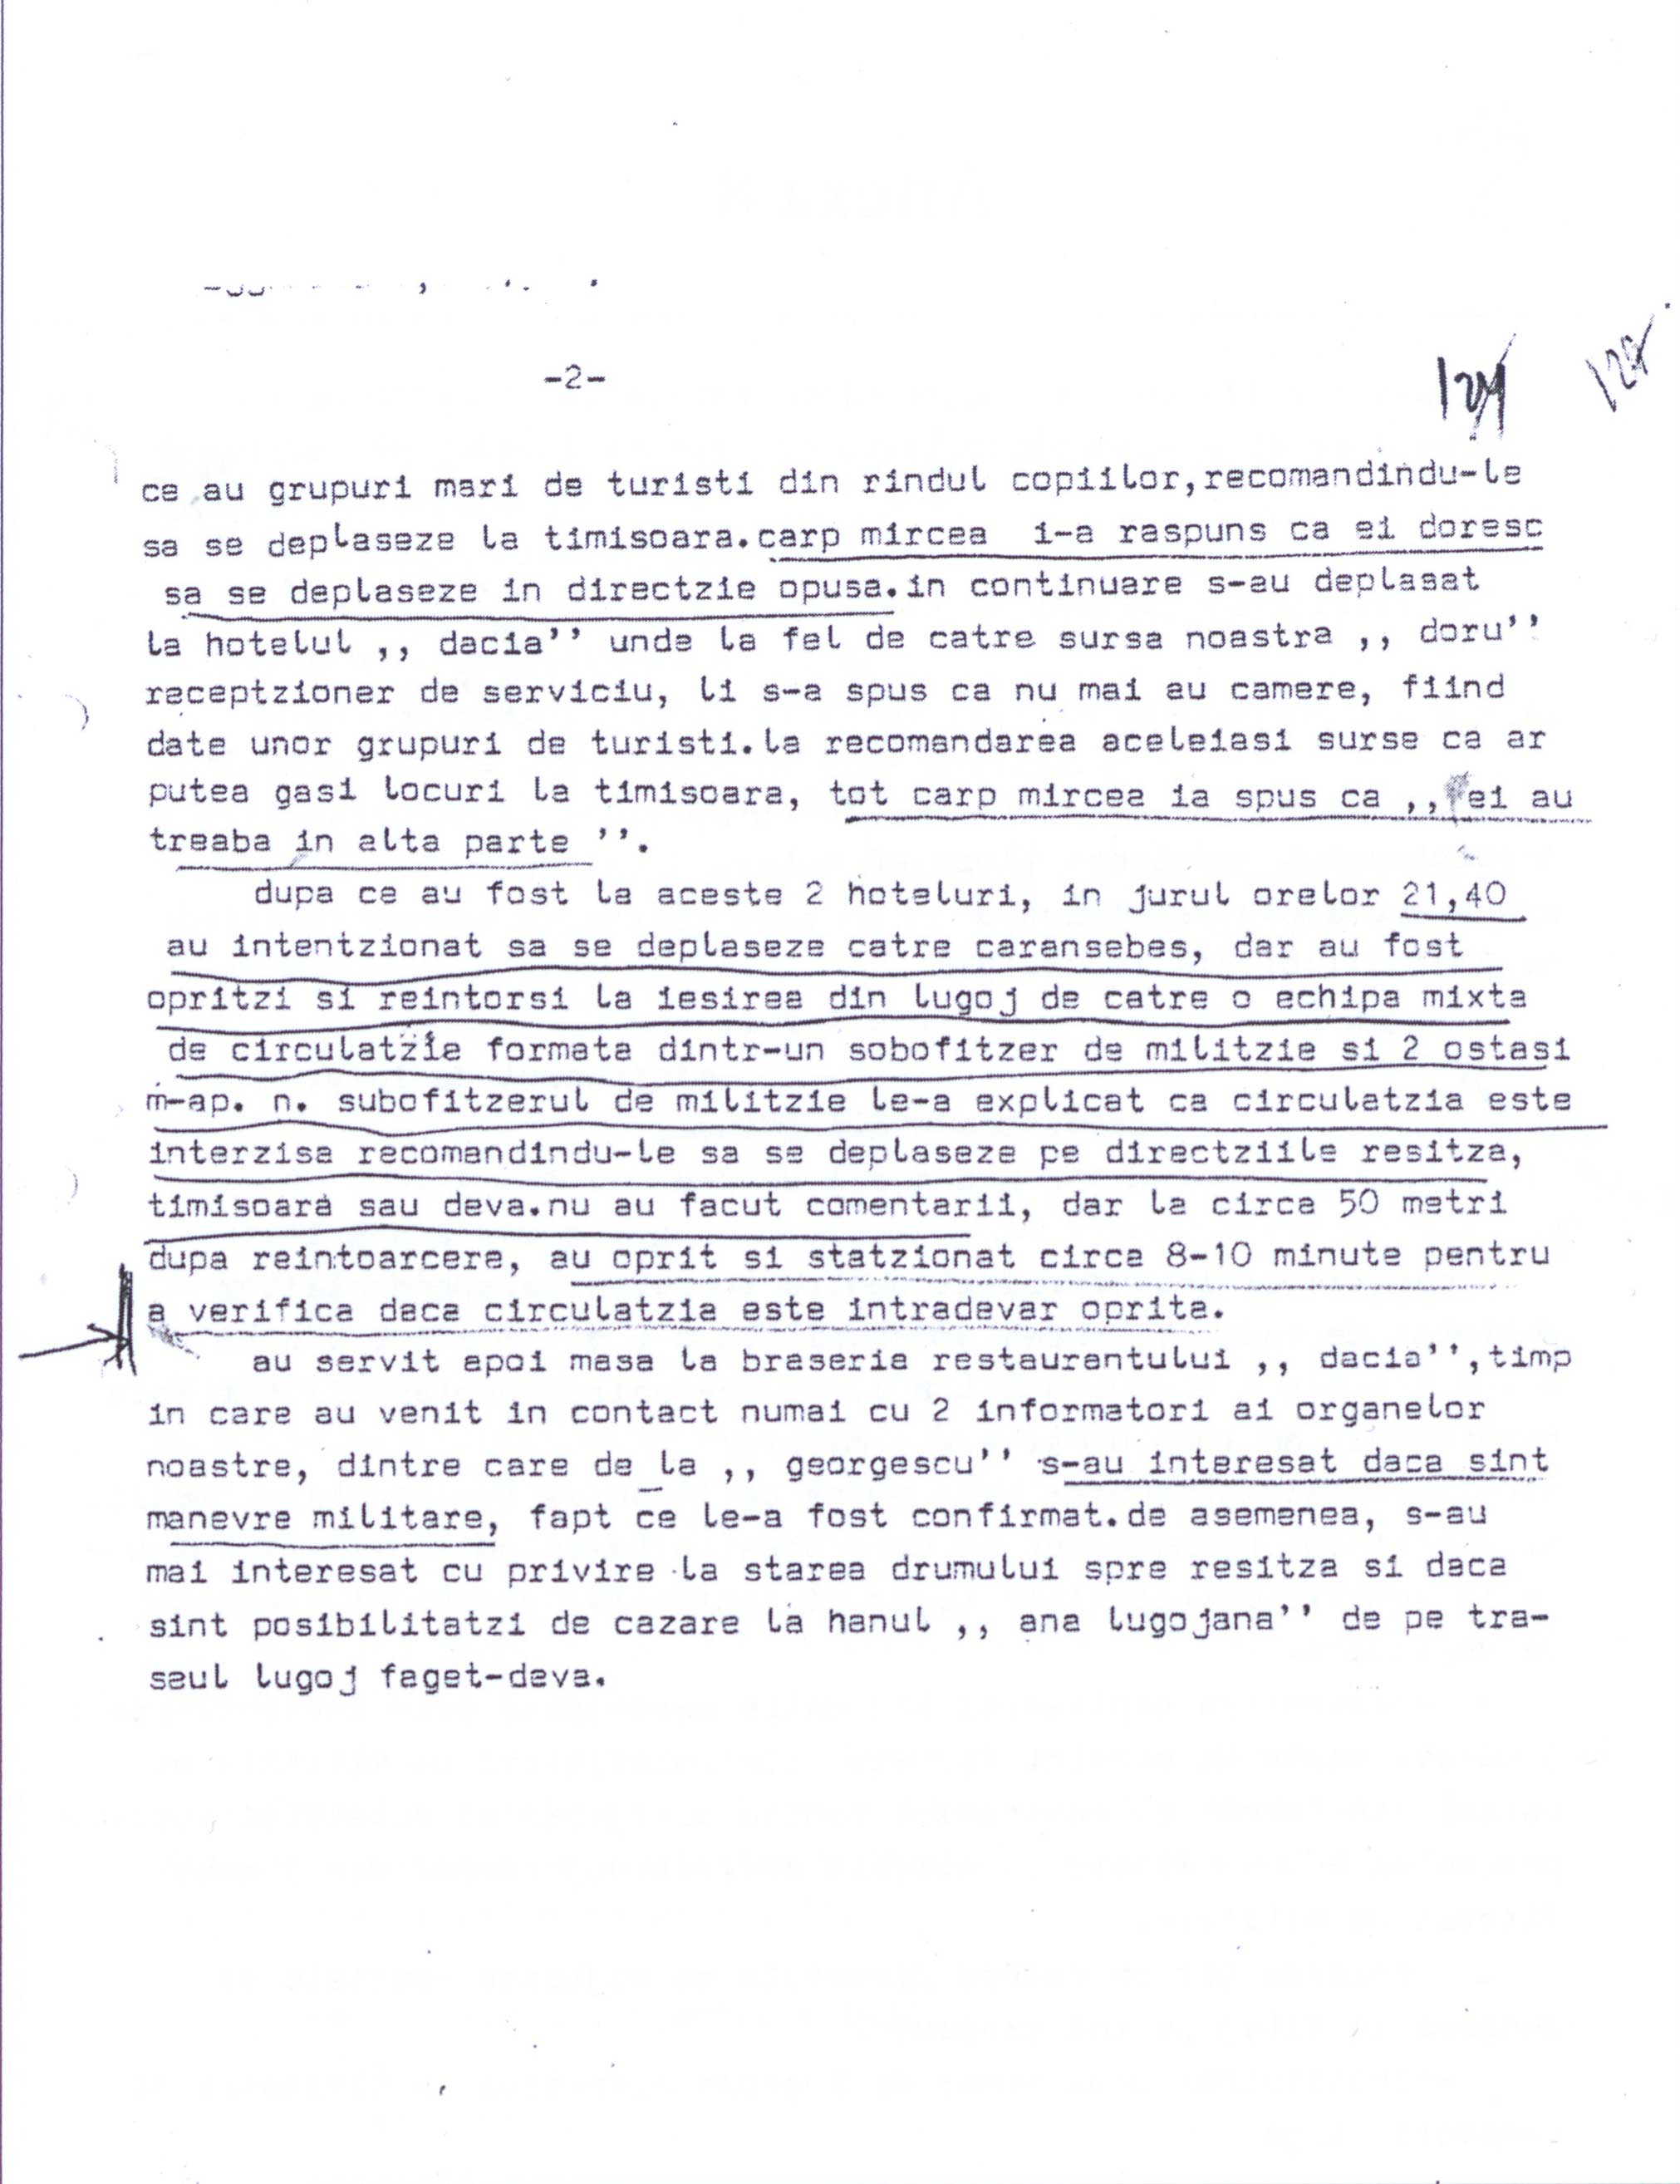 Document trimis de Inspectoratul Județean Timiș al Ministerului de Interne către Direcția a III-a Contrainformații a Securității, referitor acțiunea de urmărire și sabotaj a jurnaliștilor Radio Vocea Americii, Mircea Carp și Ron Pemstein, 15 aprilie 1978 (colecția familiei Carp).